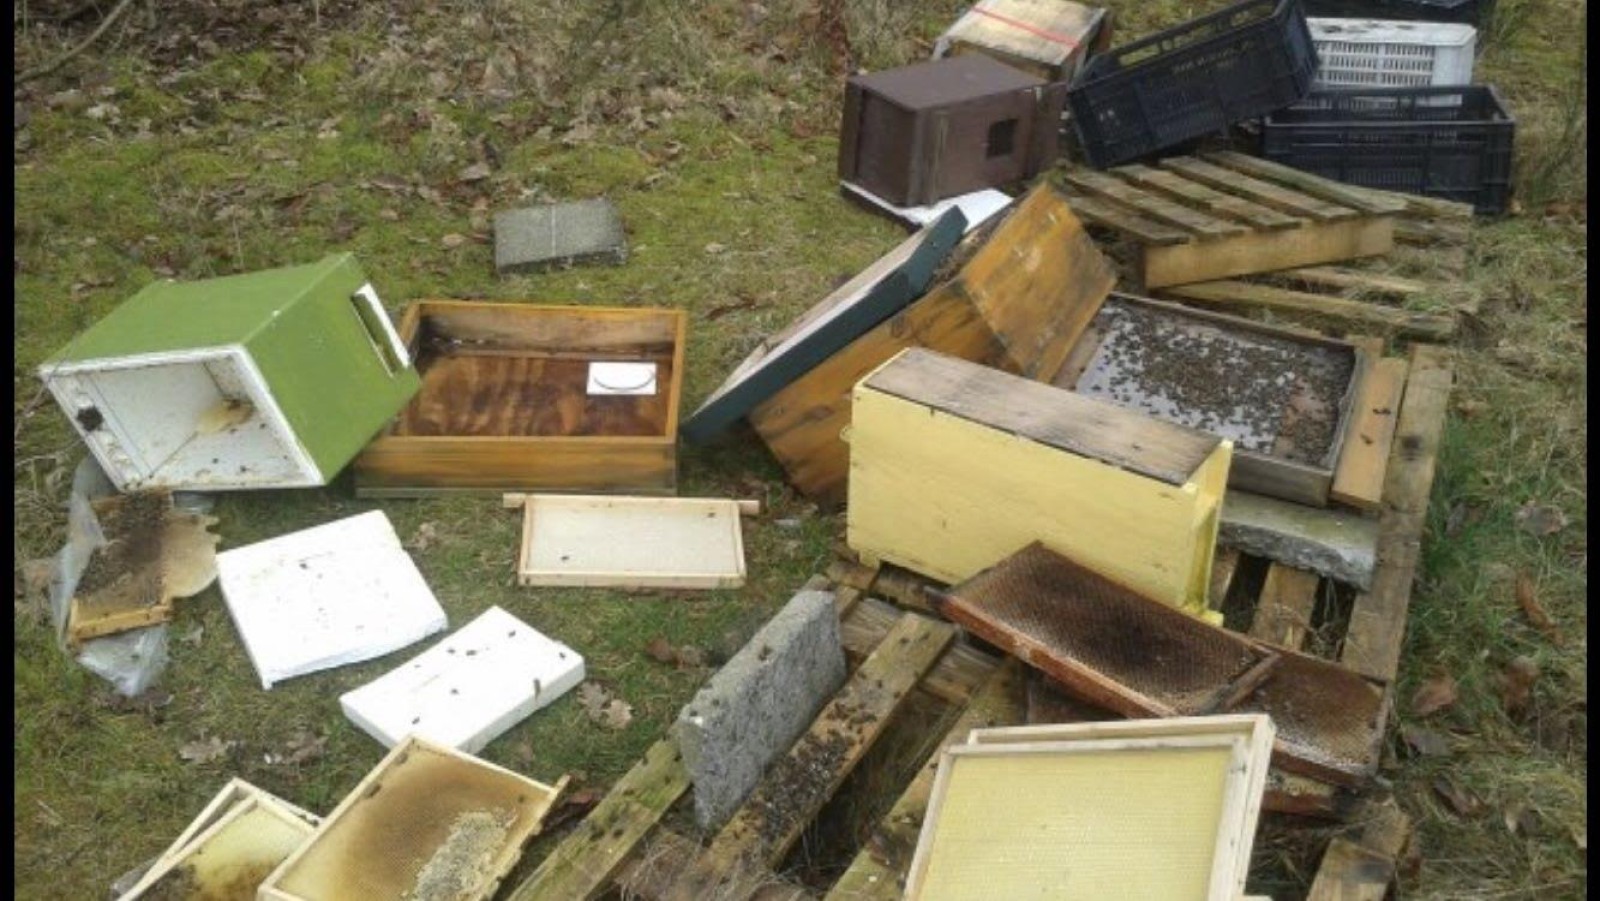 De ravage die achterbleef nadat de bijenkasten waren vernield